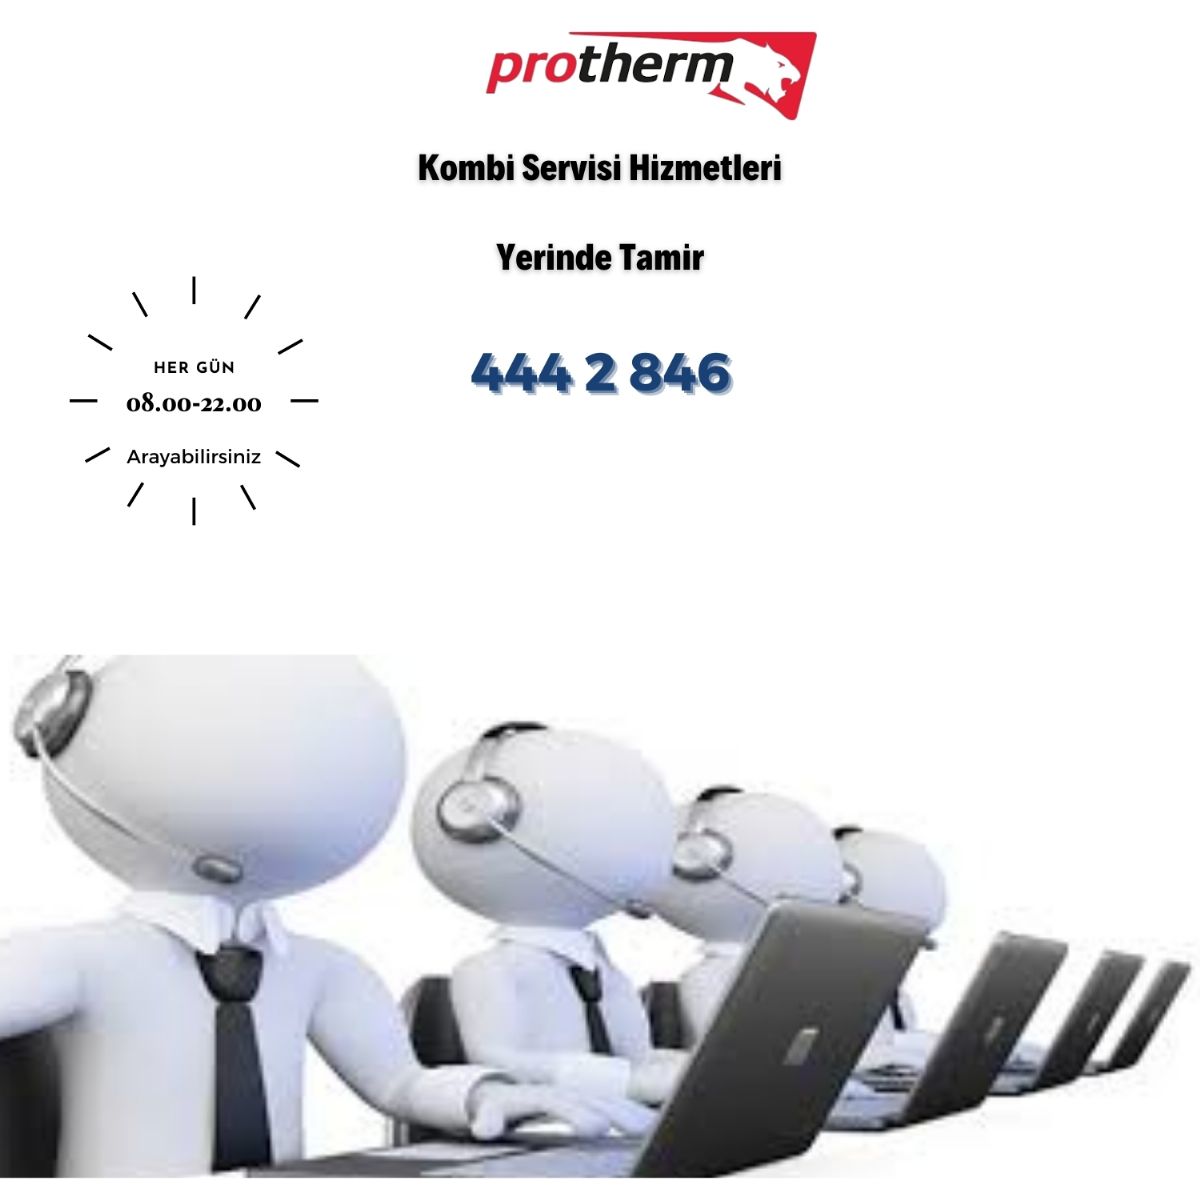 Protherm kombi servisi iletişim-444 2 846